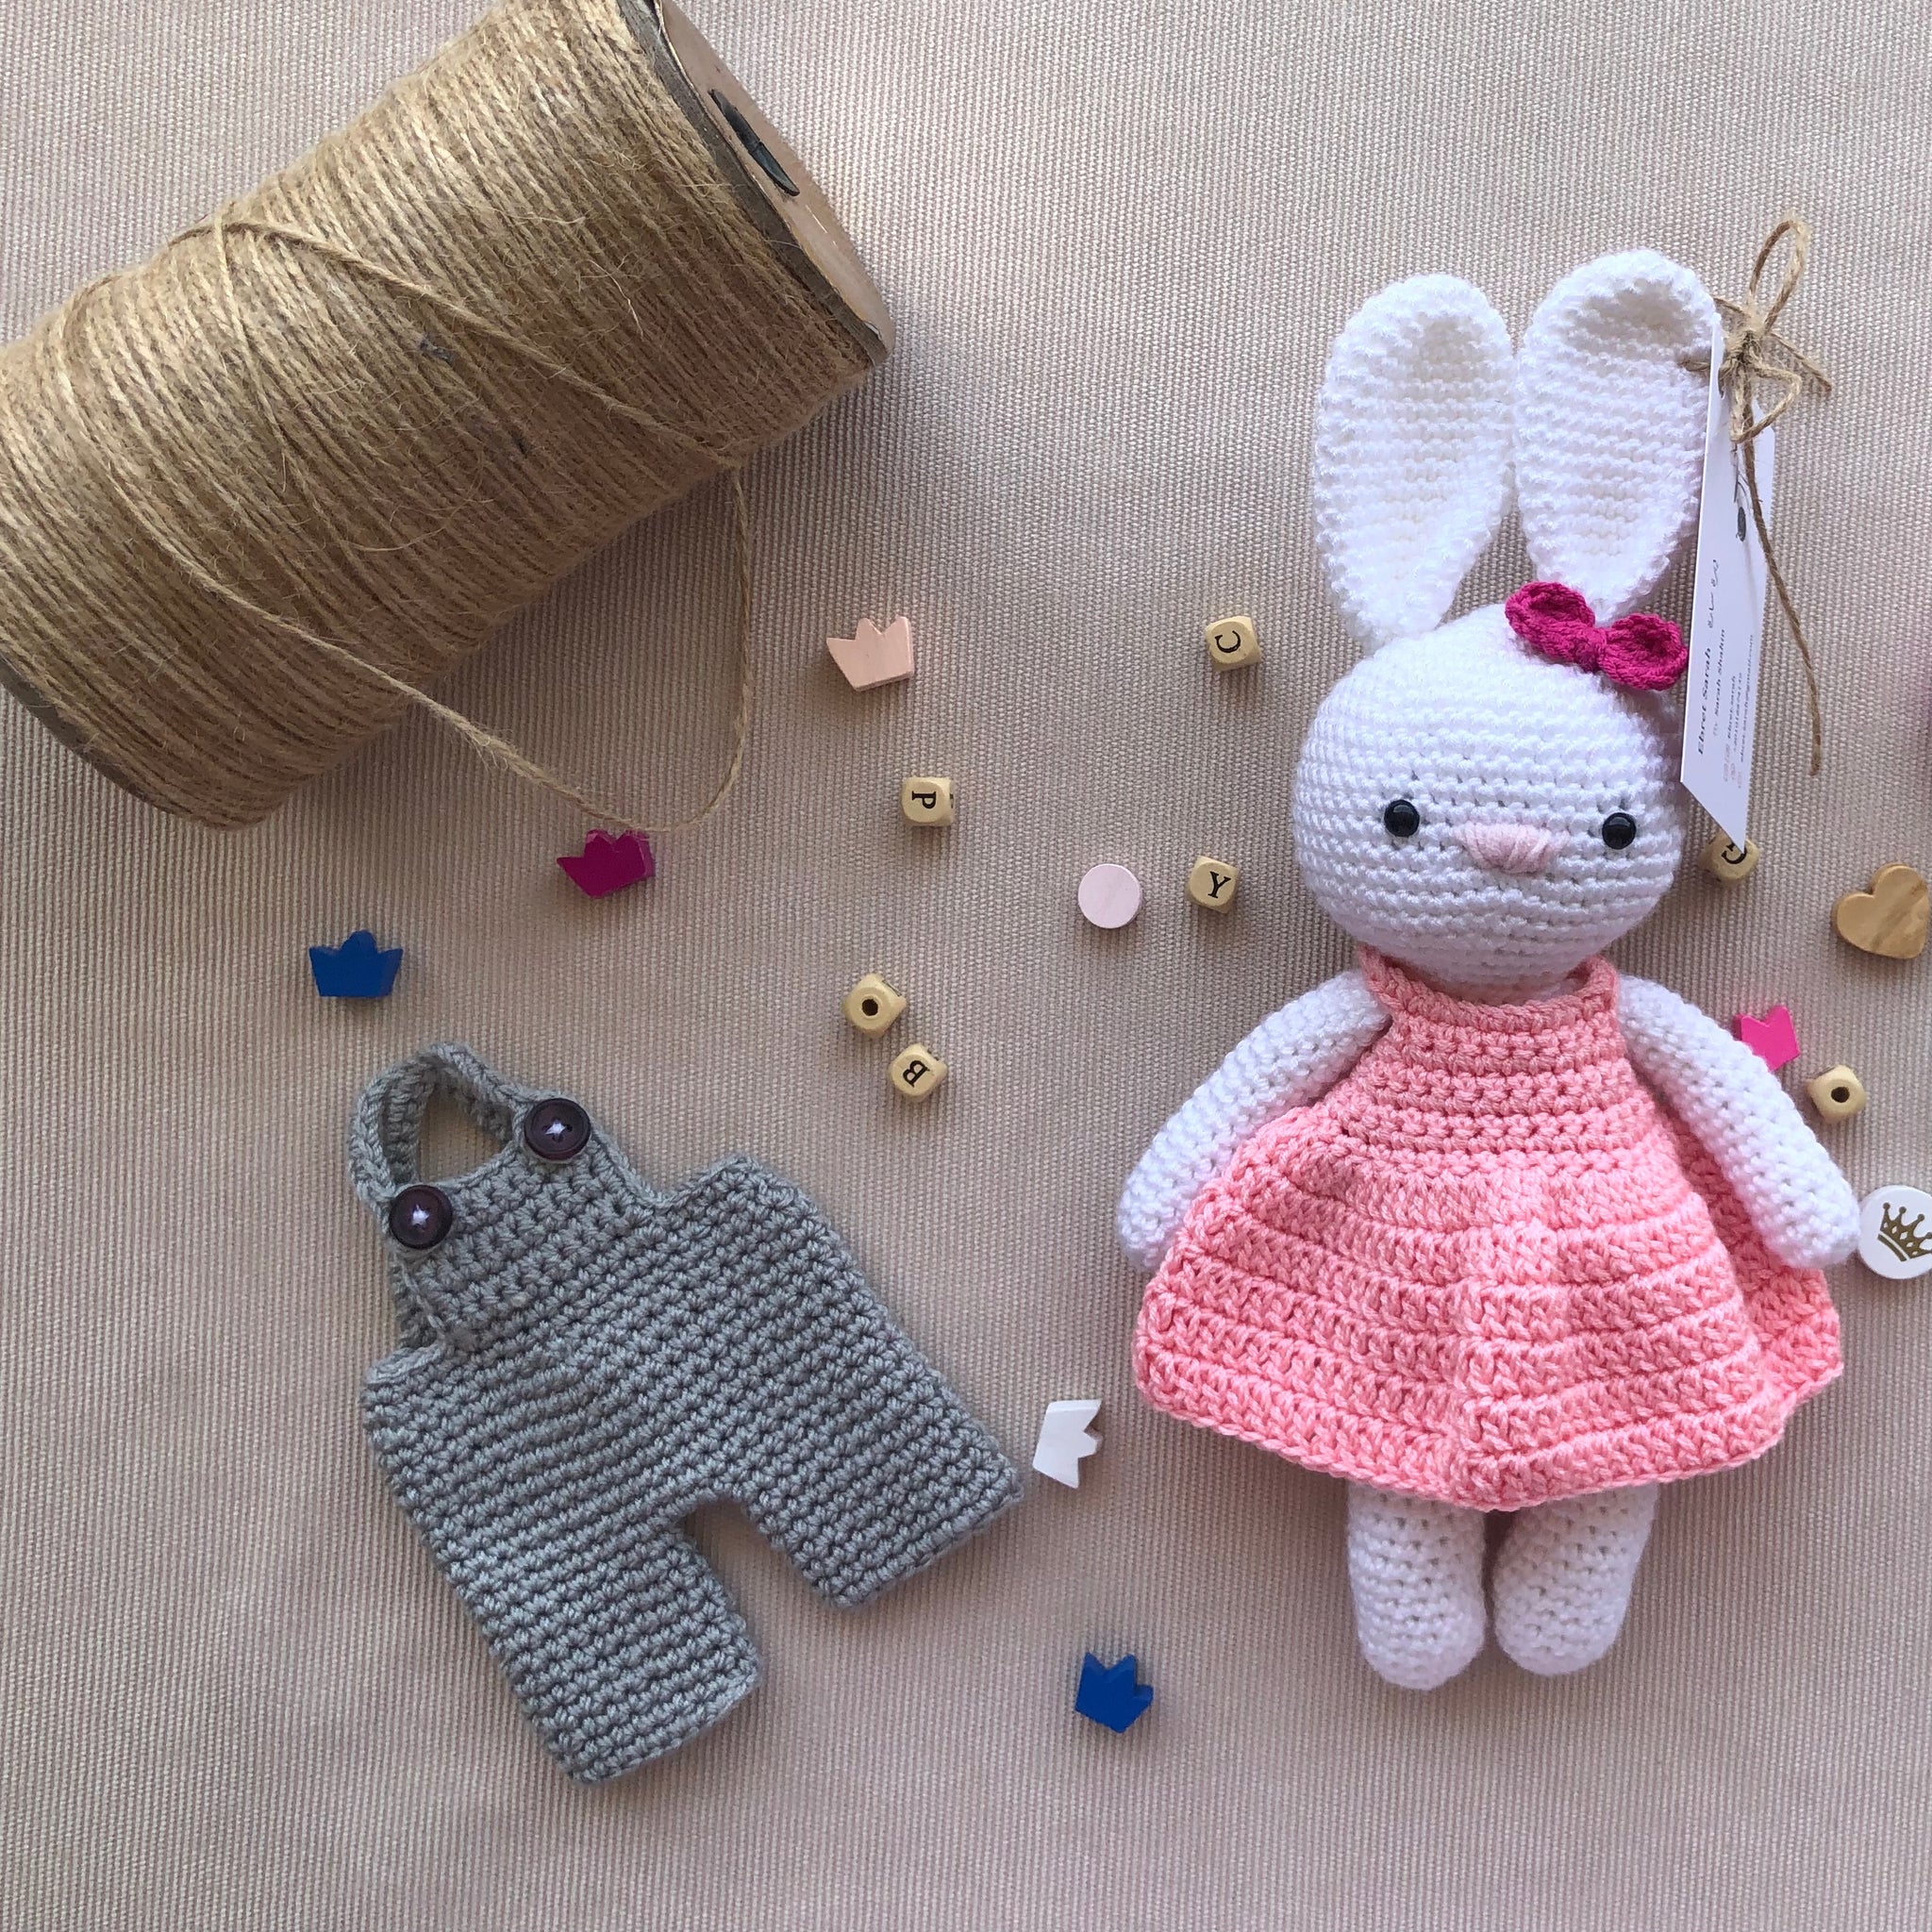 Daisy the Crochet Bunny